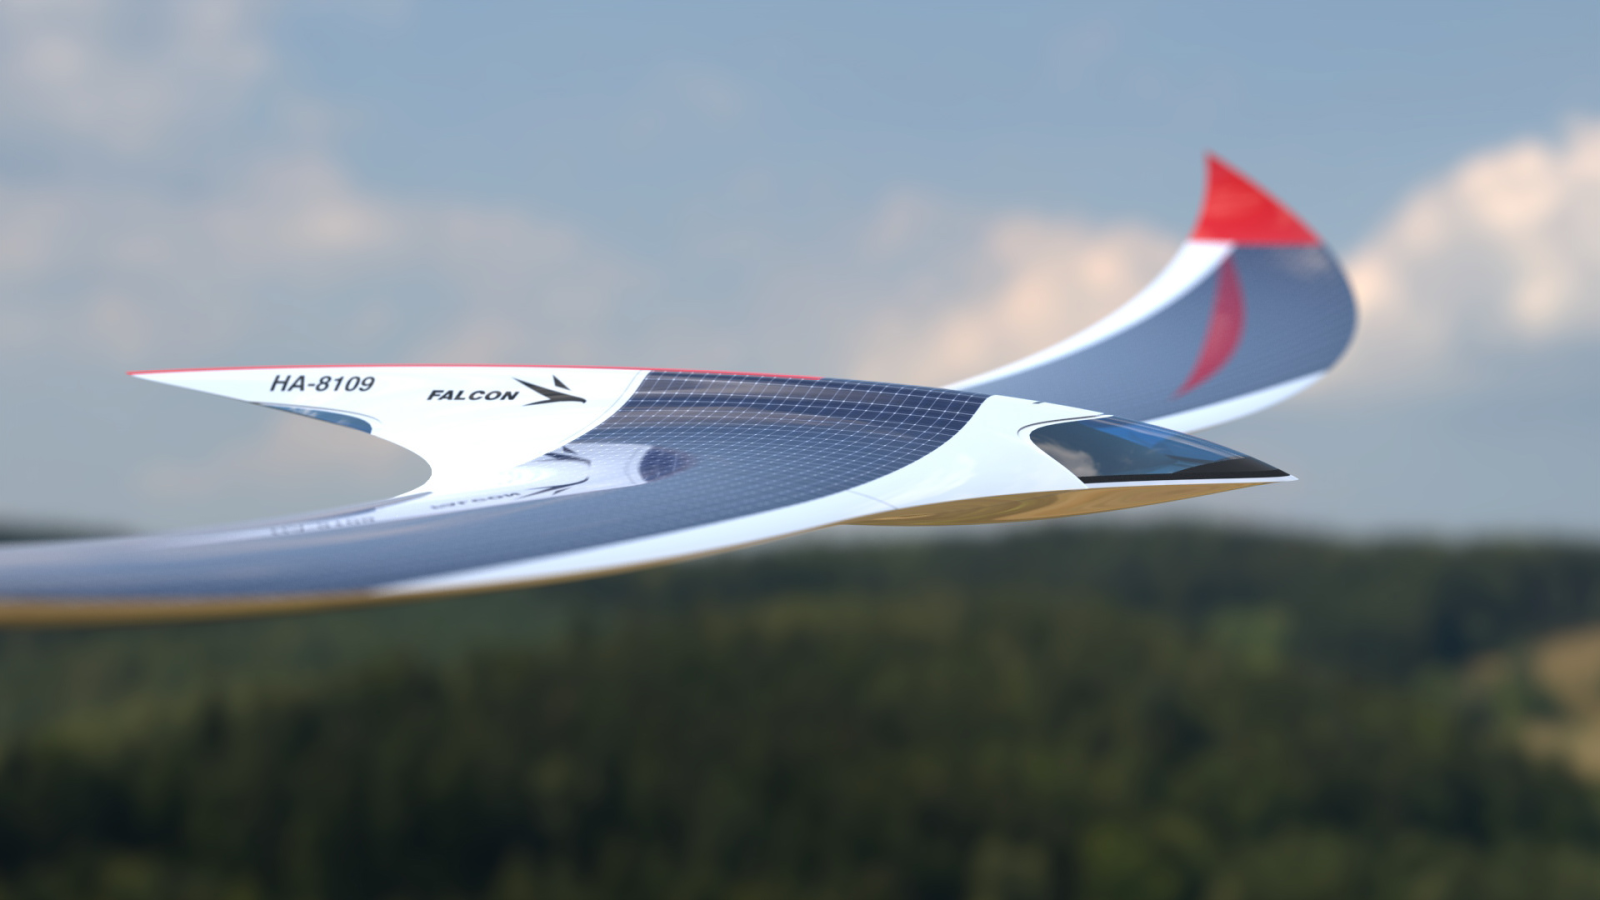 Séduisant, ce concept d’avion à énergie solaire conserve une grande part de mystère. © Lasko Design